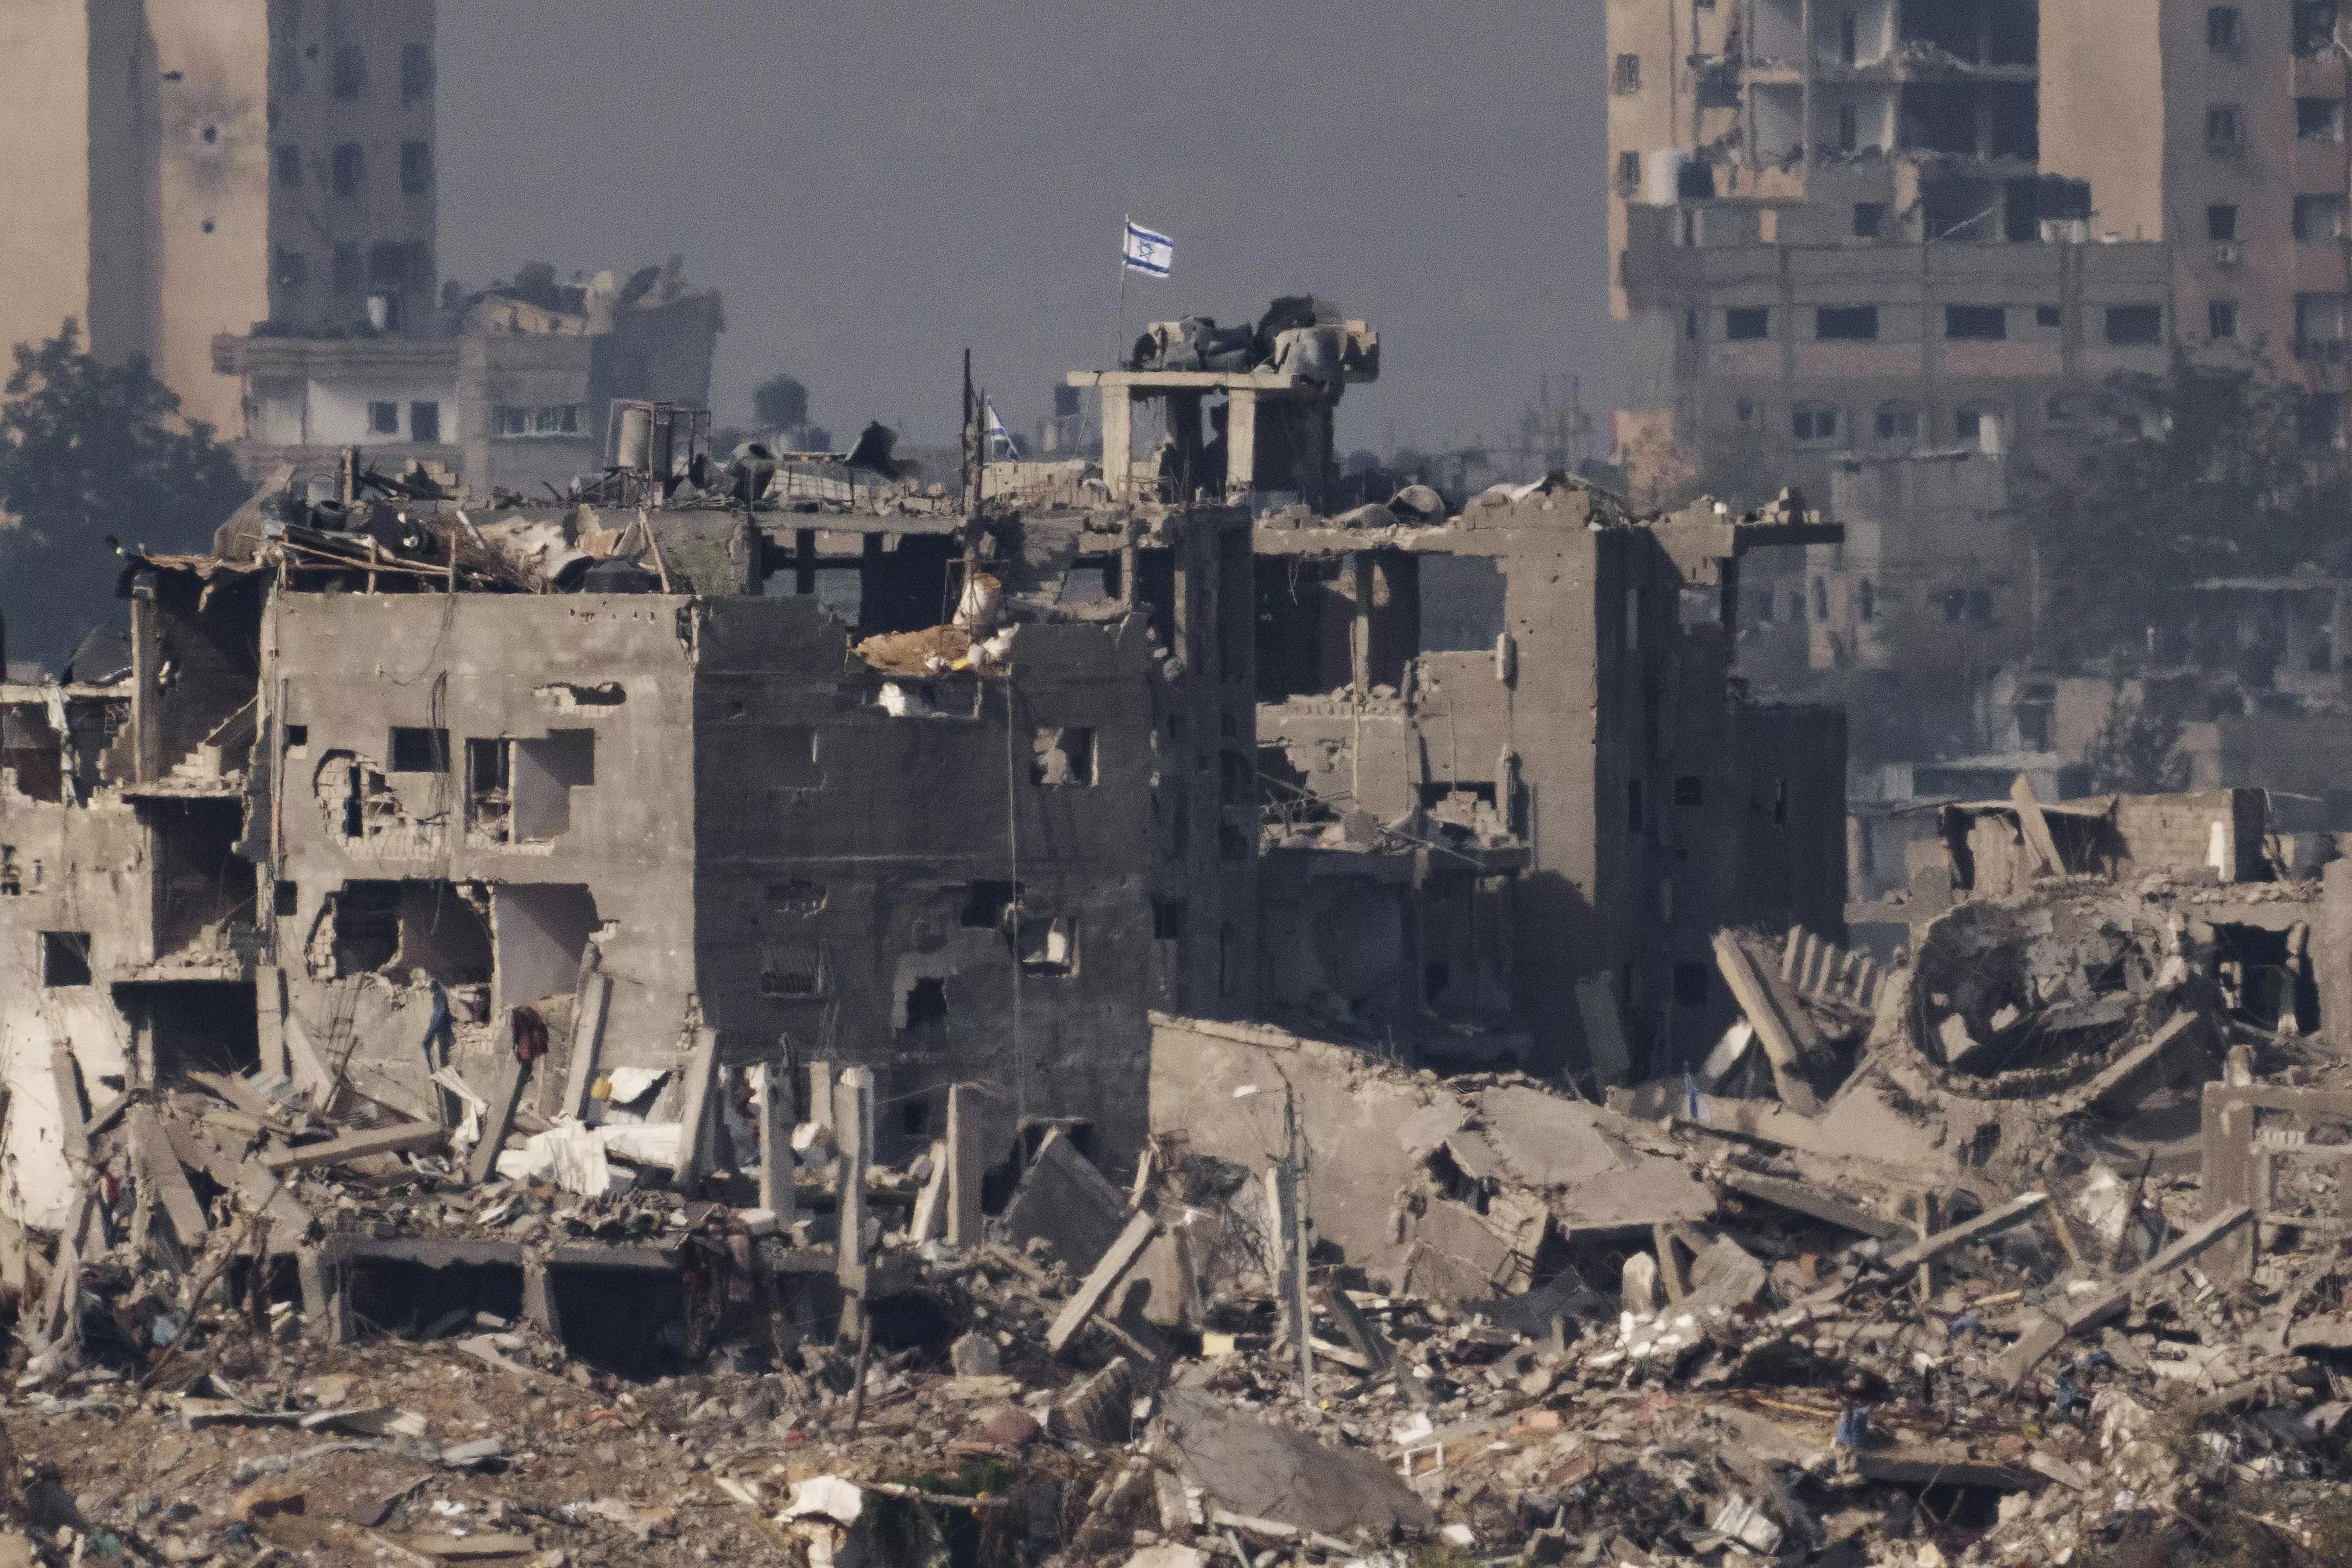 Gaza, destroyed building